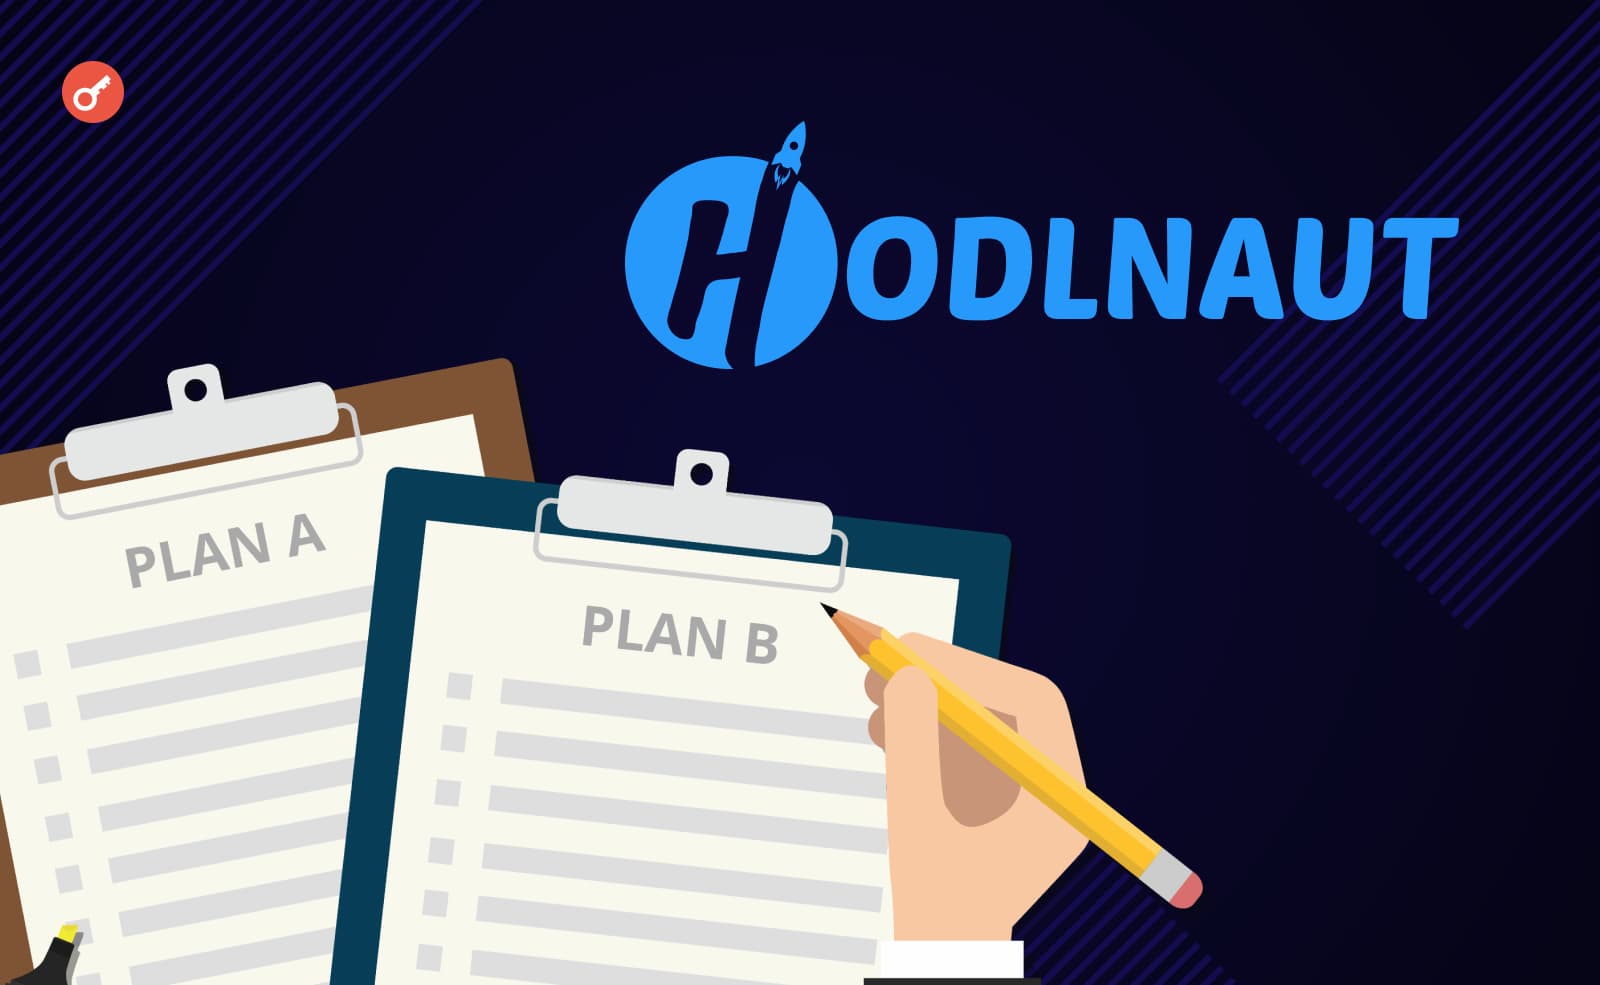 Кредитори Hodlnaut відмовилися від плану реструктуризації на користь ліквідації. Головний колаж новини.